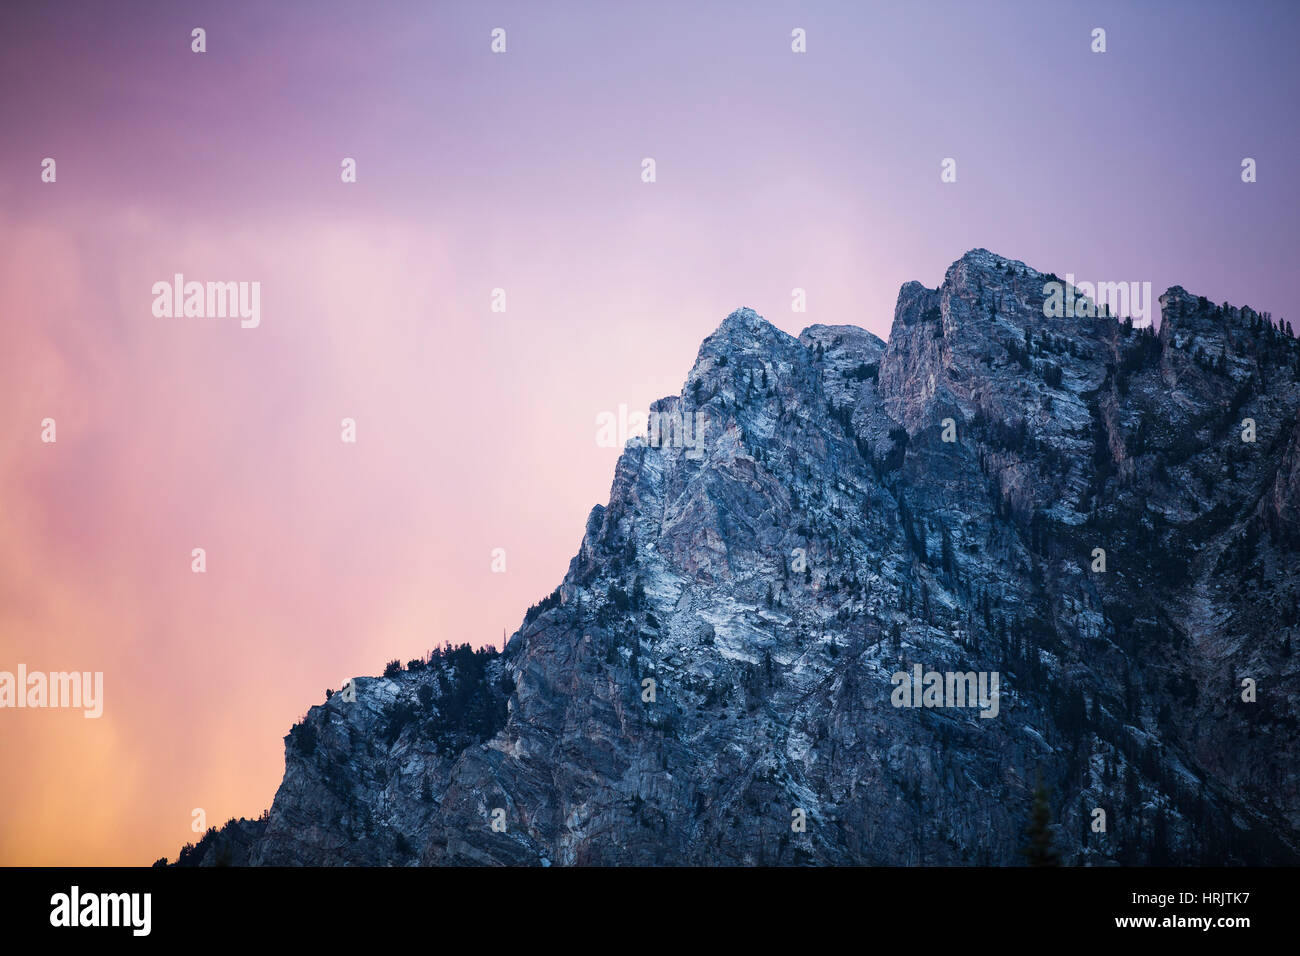 Ein felsiger Berg-Gipfel gegen einen bunten Himmel in der Abenddämmerung. Niedrigen Winkel Ansicht Landschaft und Geologie Stockfoto